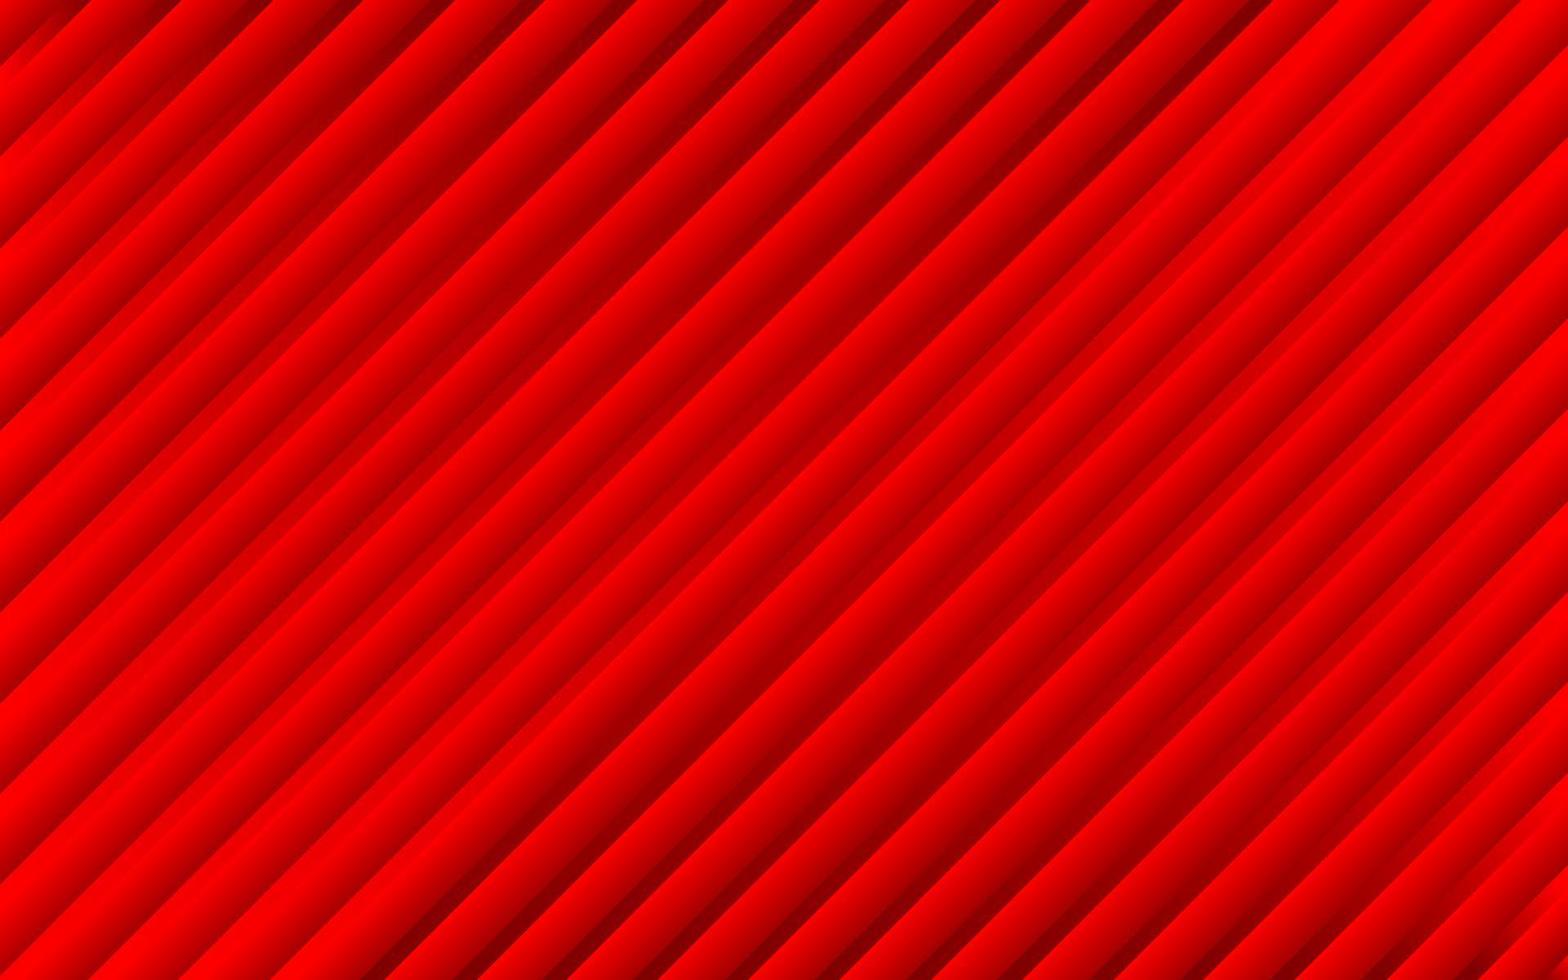 fond métallique abstrait avec des lignes diagonales rouges. illustration de rayures vectorielles obliques vecteur